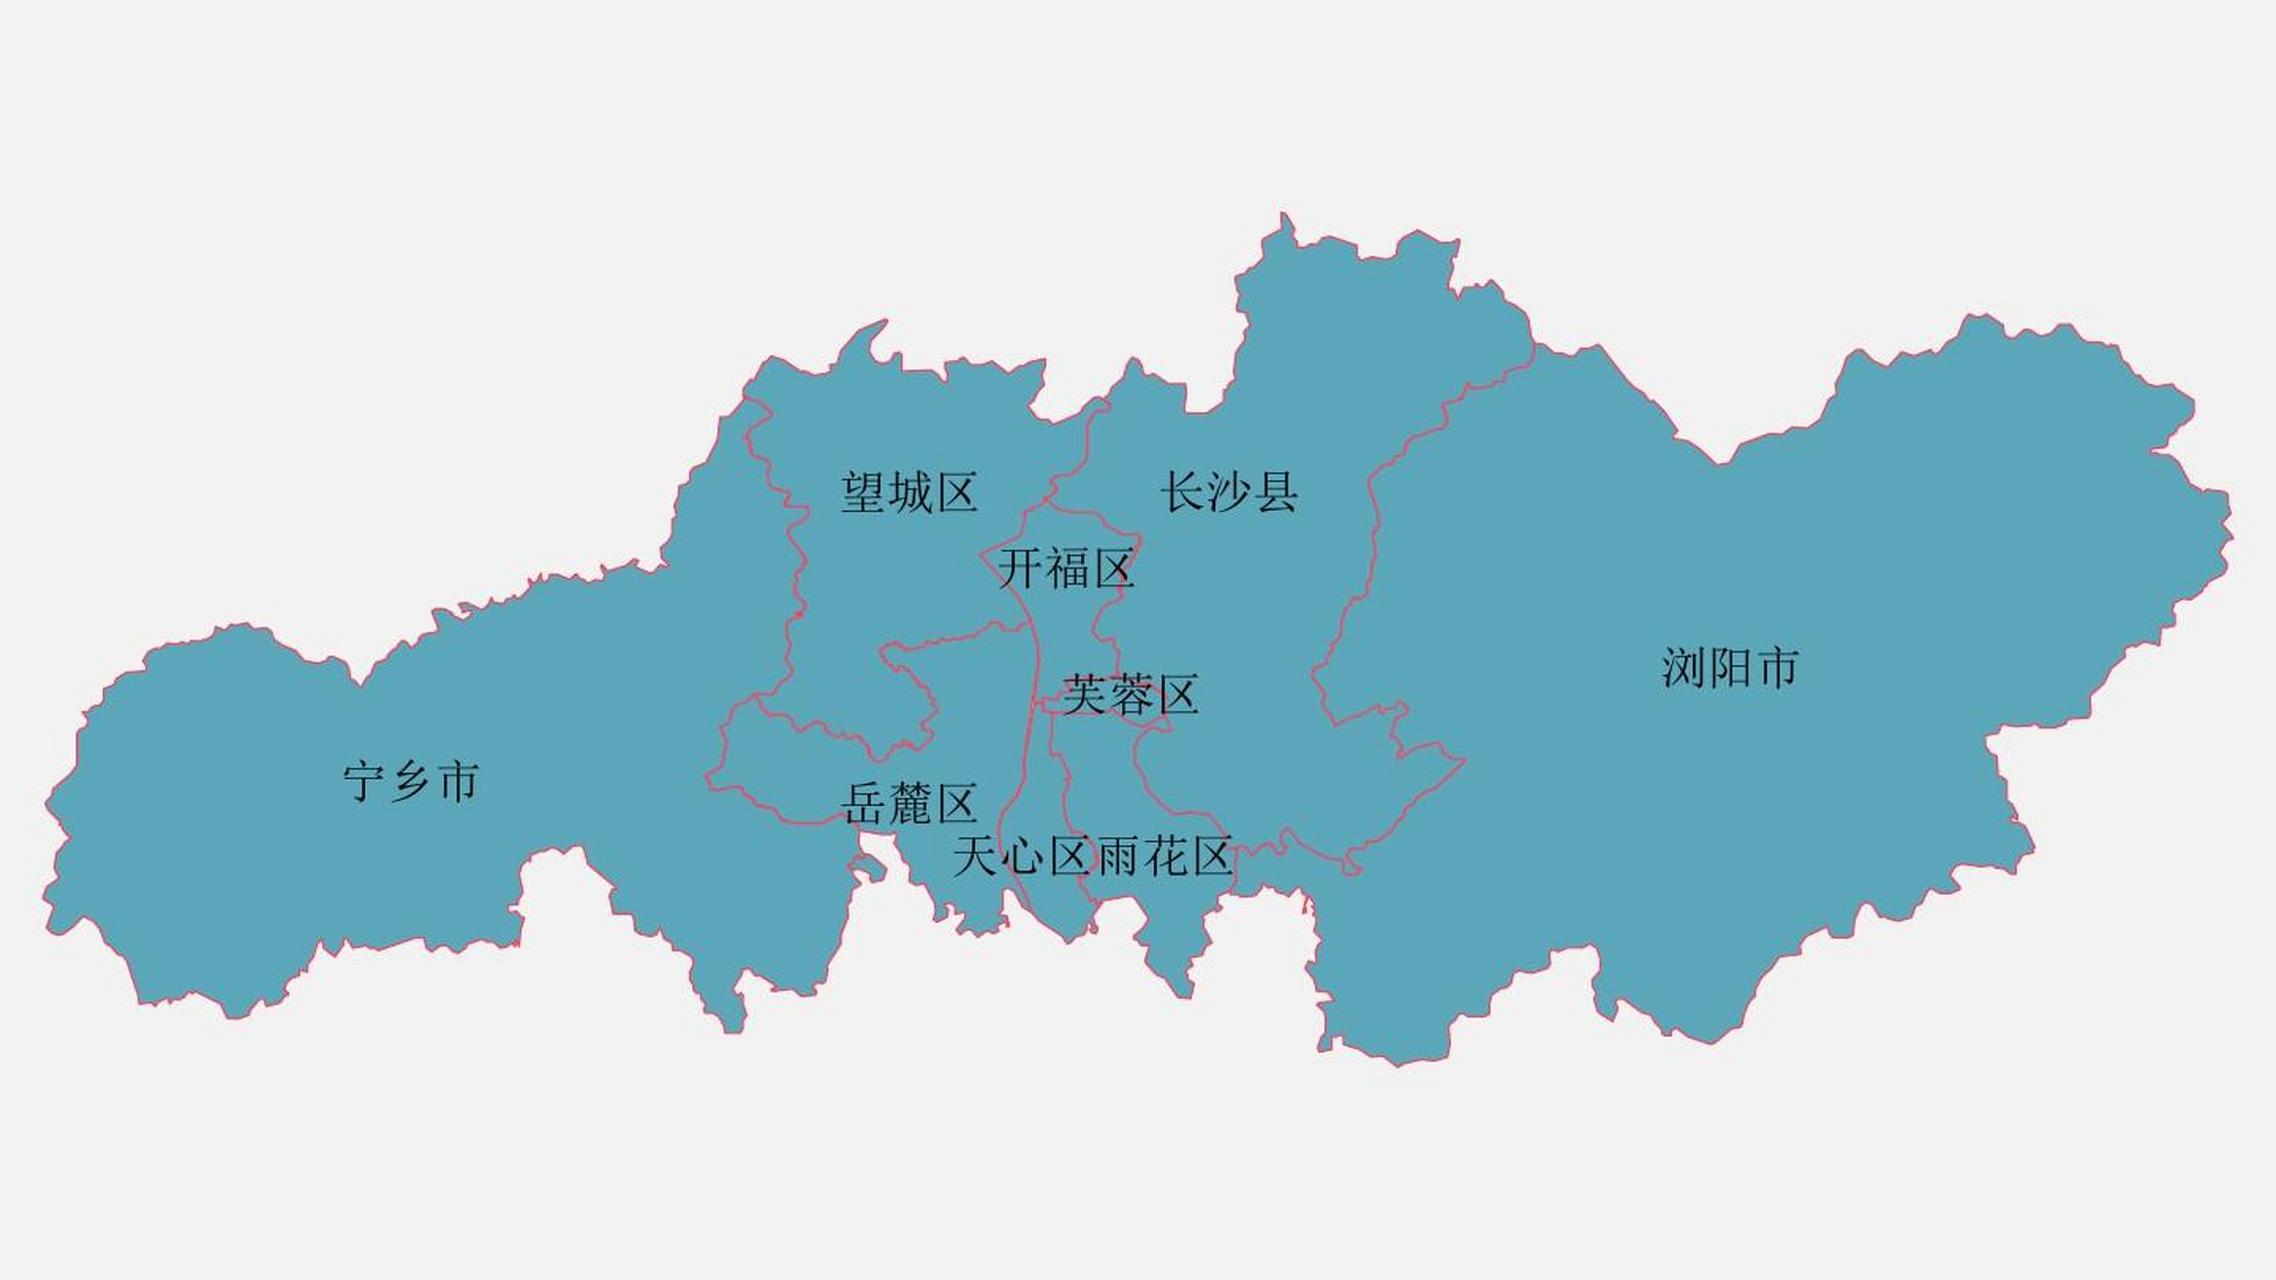 南昌与长沙的差距其实是区划差距,理由: 南昌全市下辖6个区,3个县